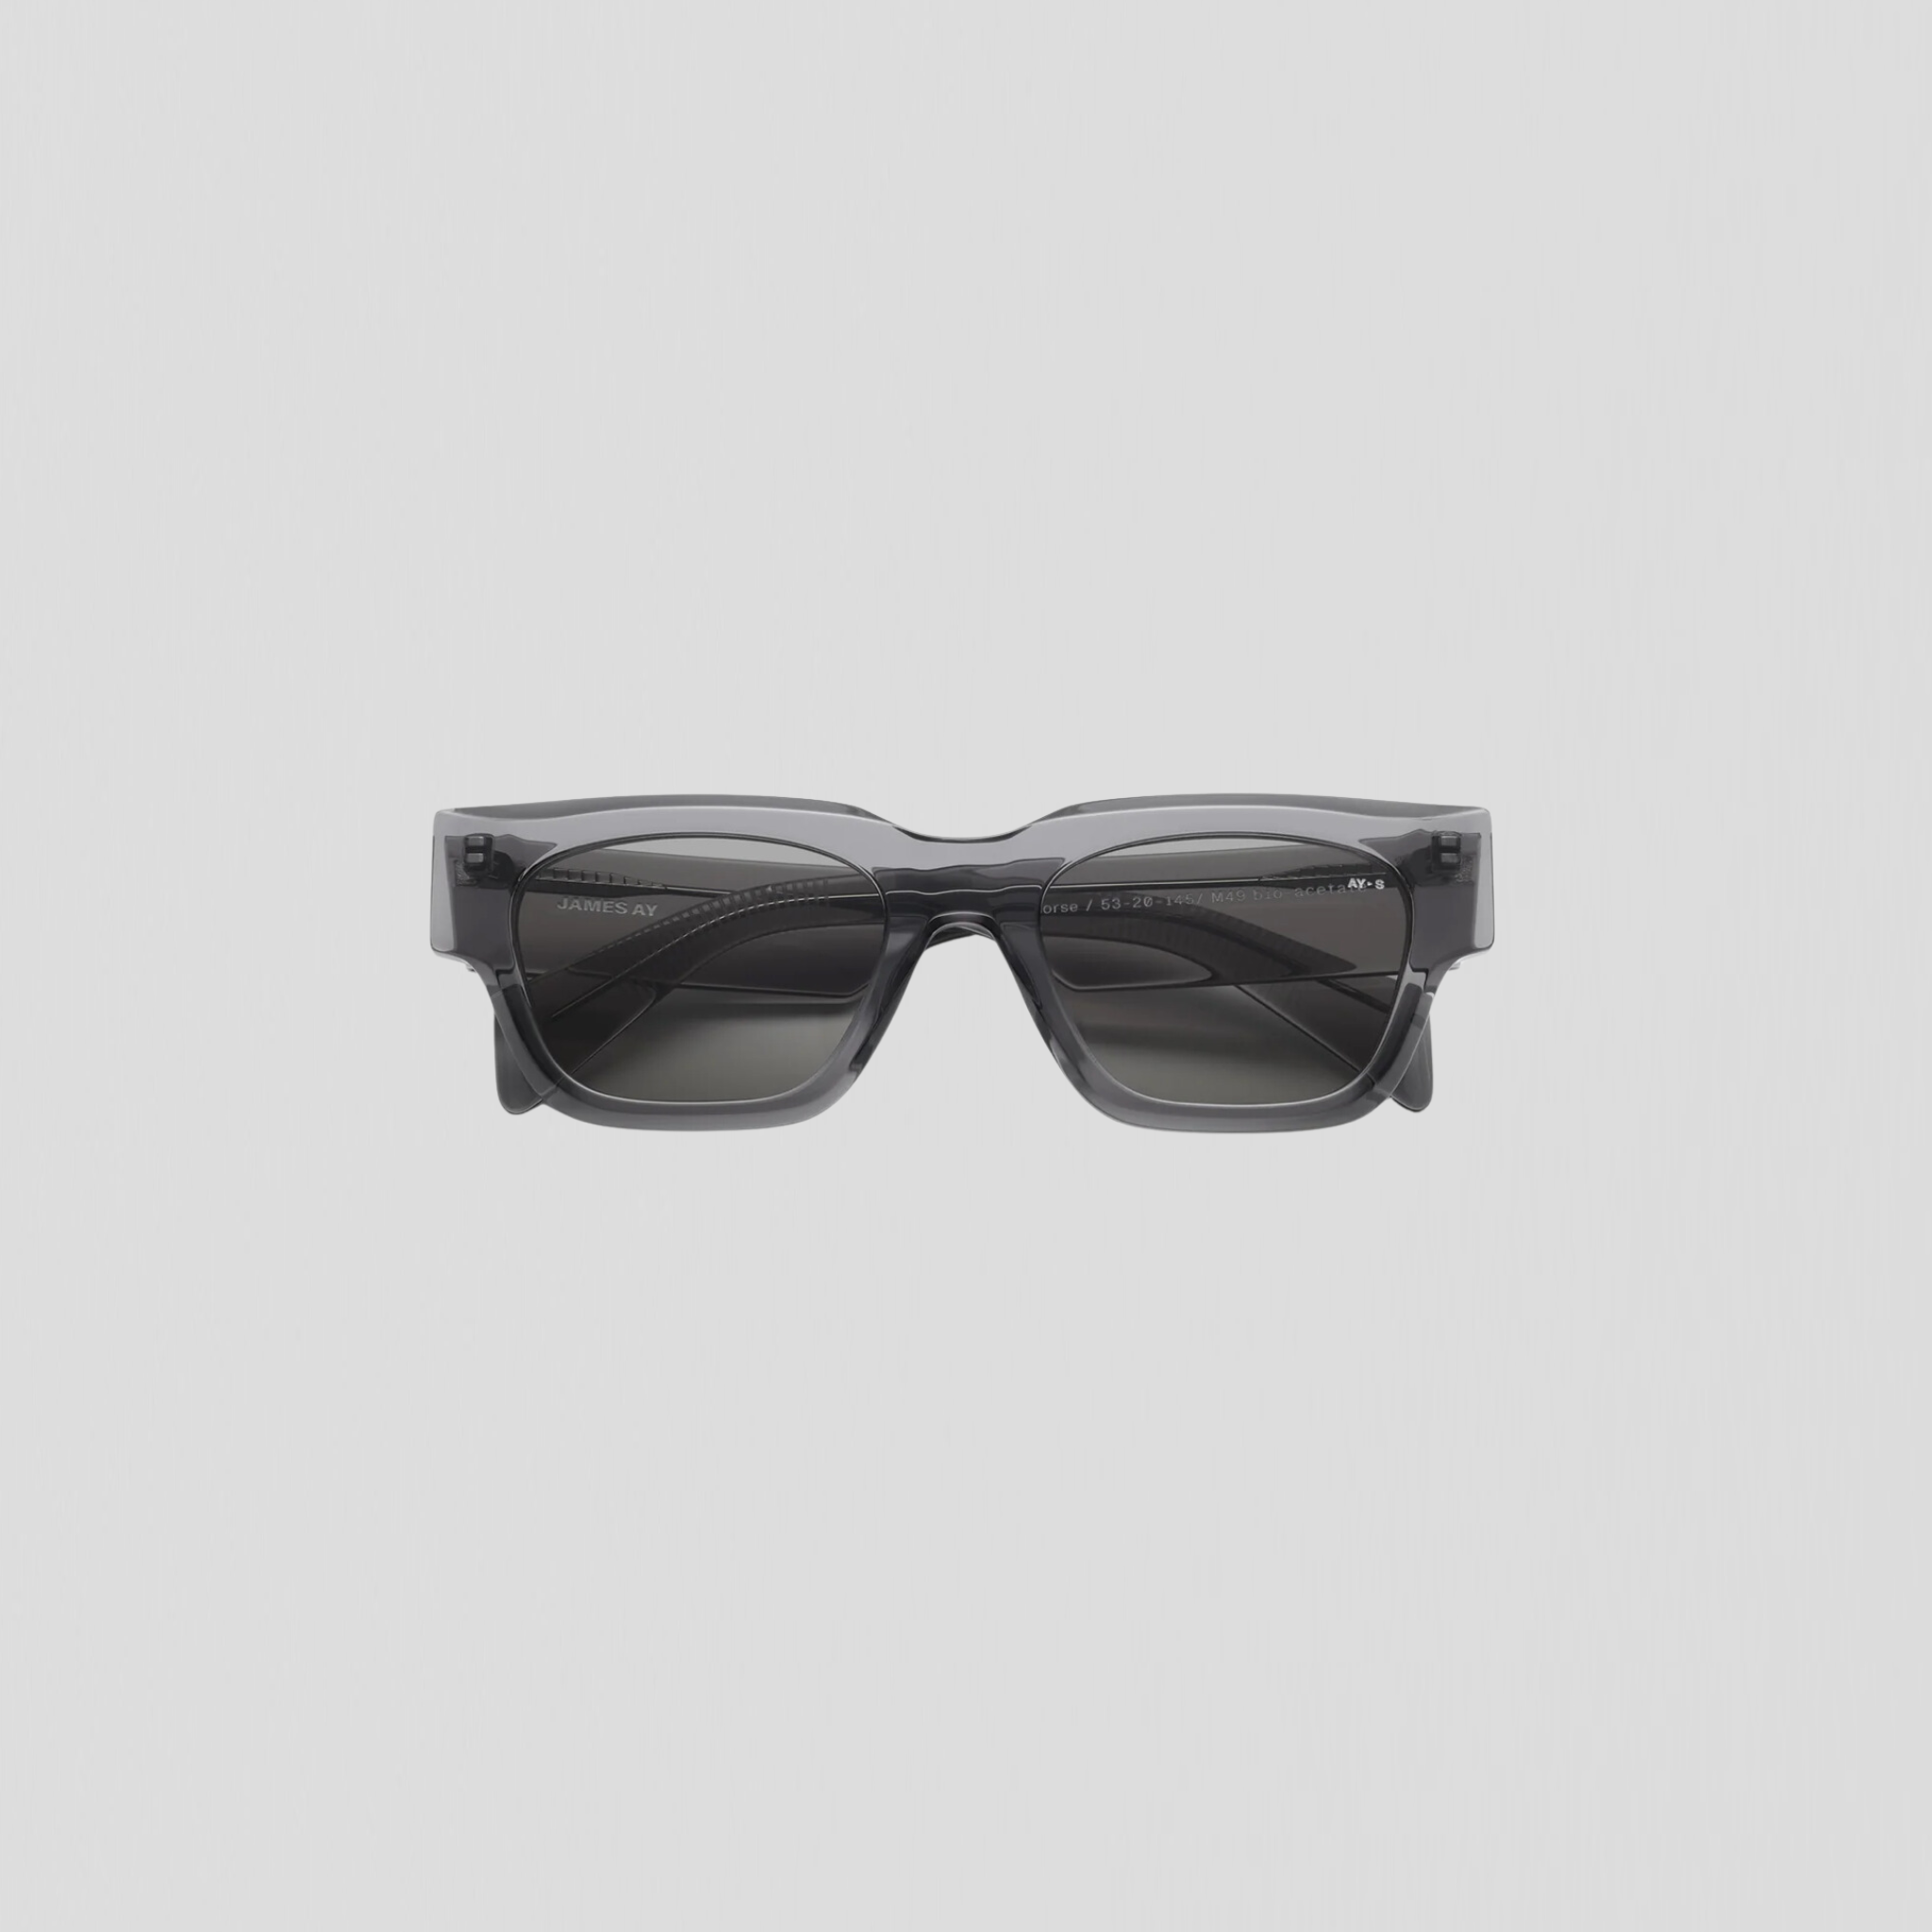 James Ay Norse Sunglasses Transparent Grey